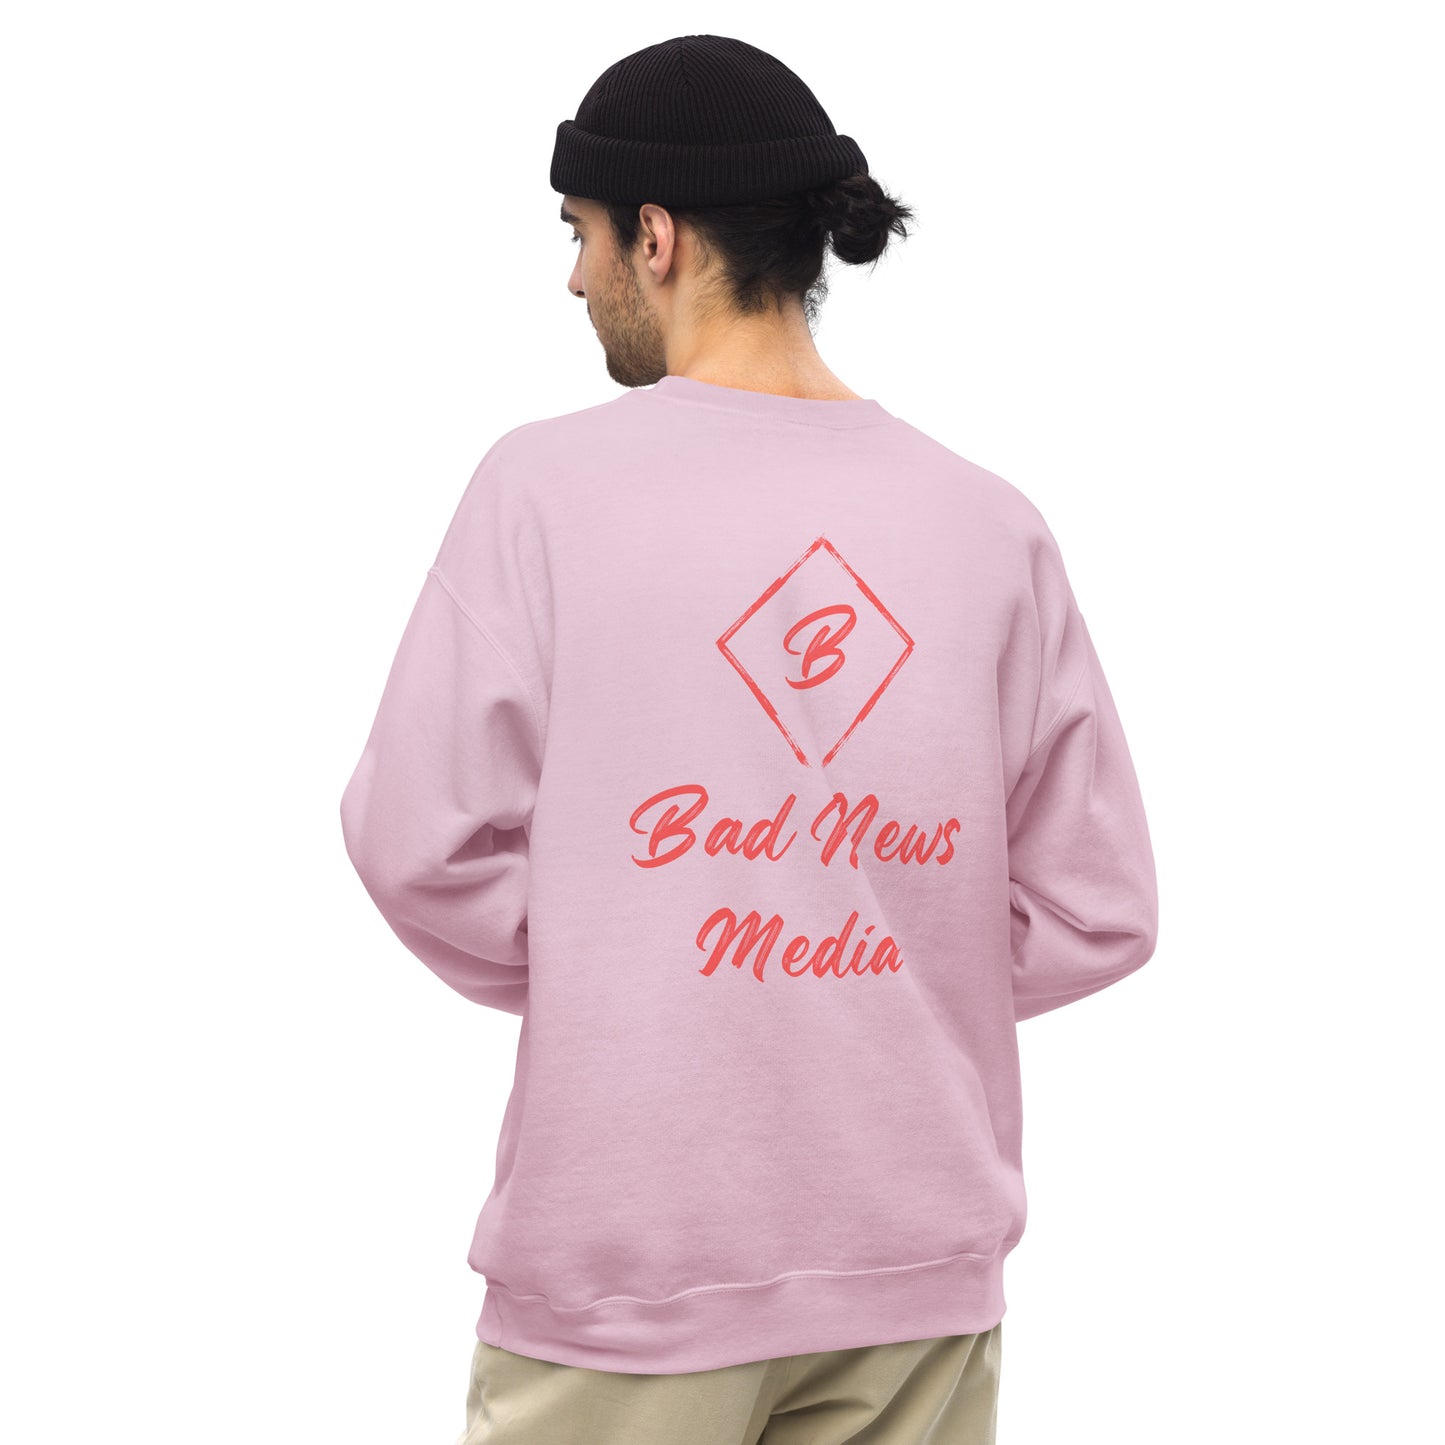 Bad News Media Sweatshirt